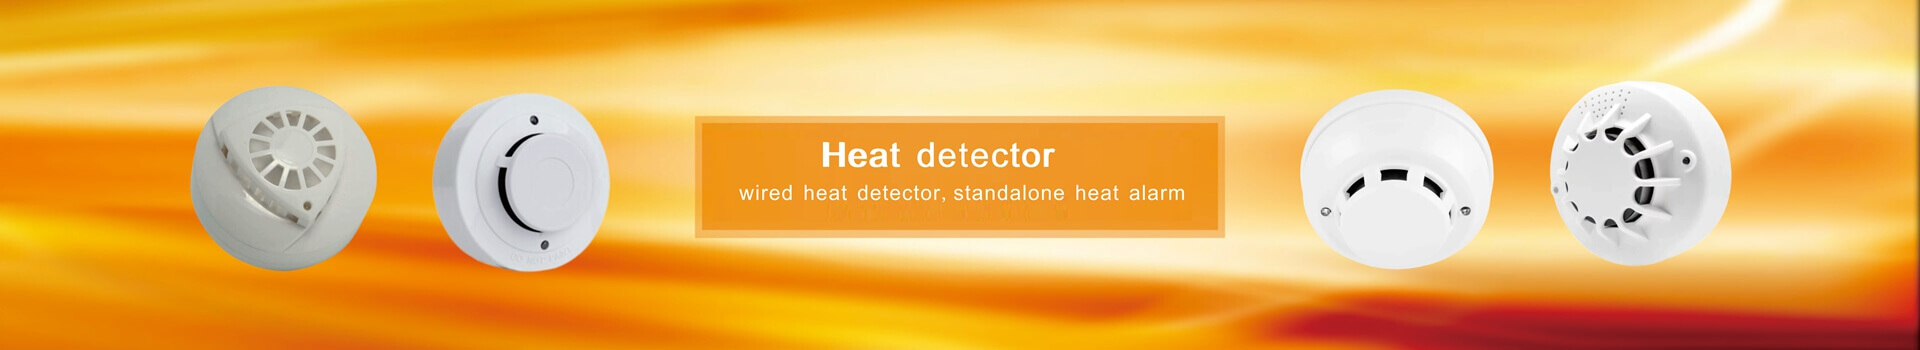 Heat detector